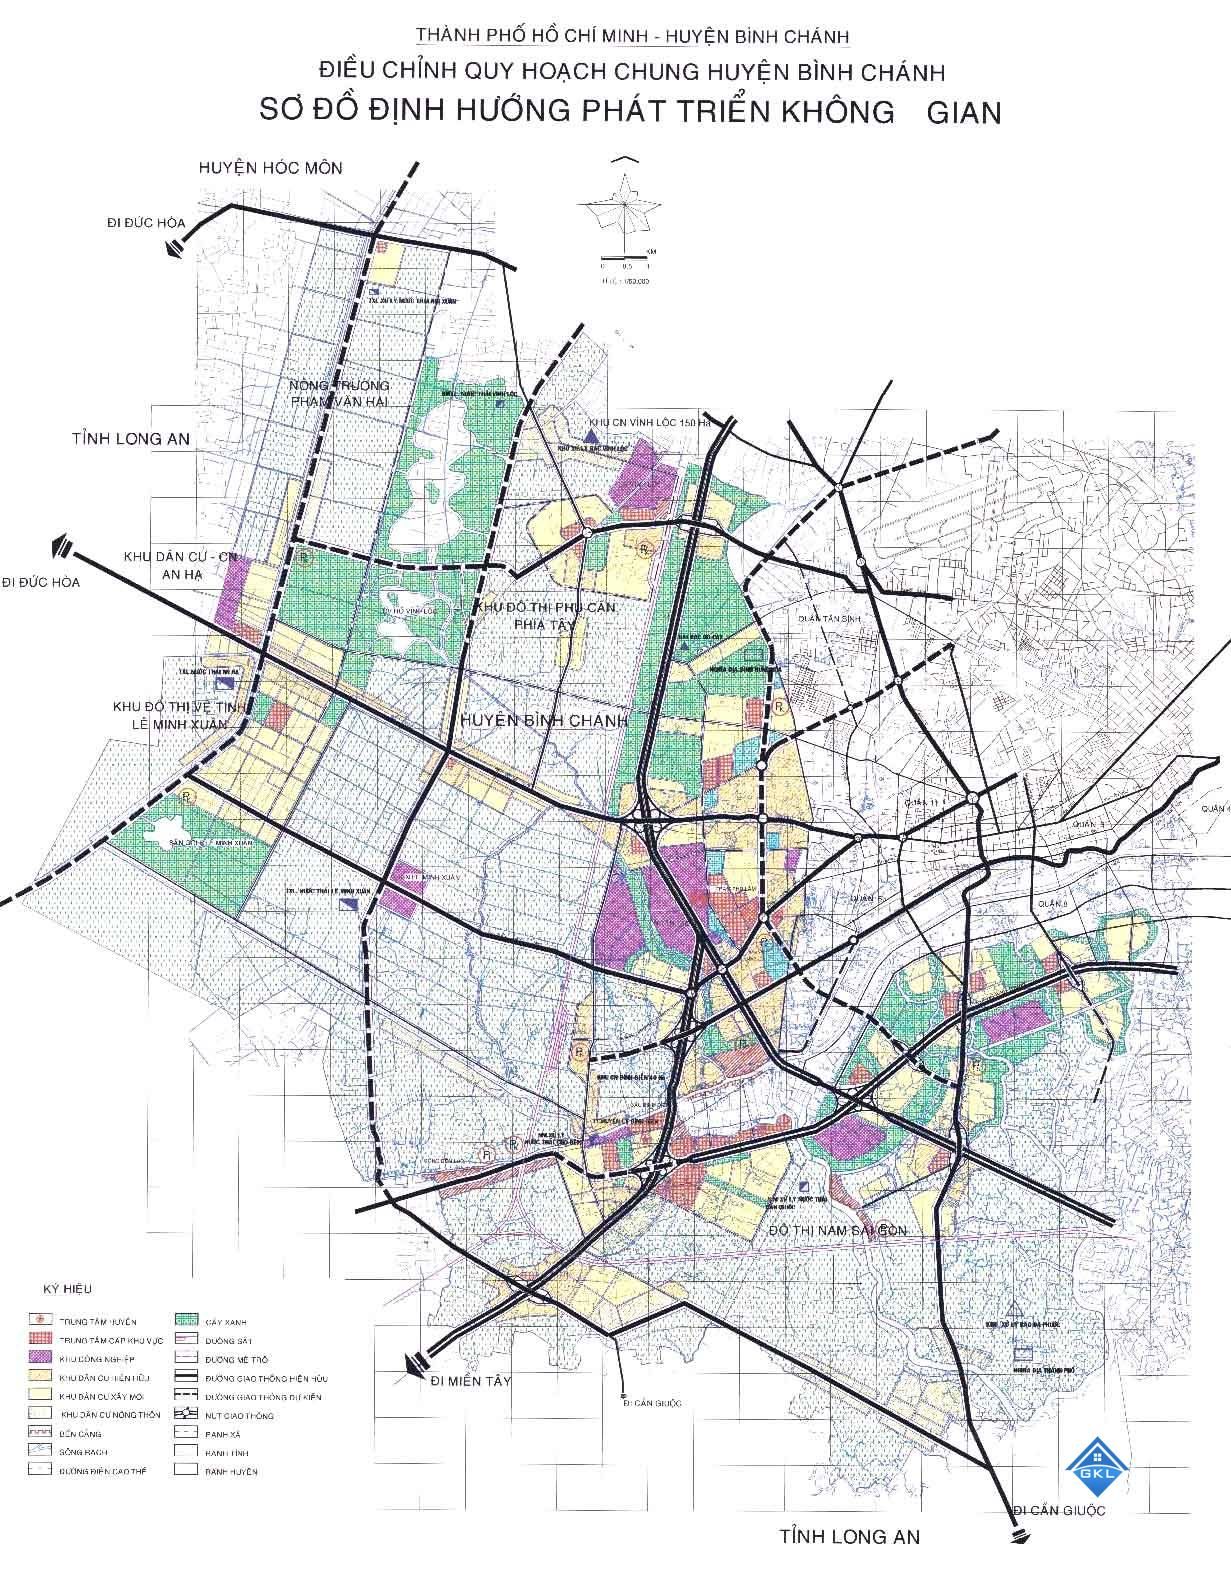 Bản đồ quy hoạch huyện Bình Chánh TPHCM đến năm 2020